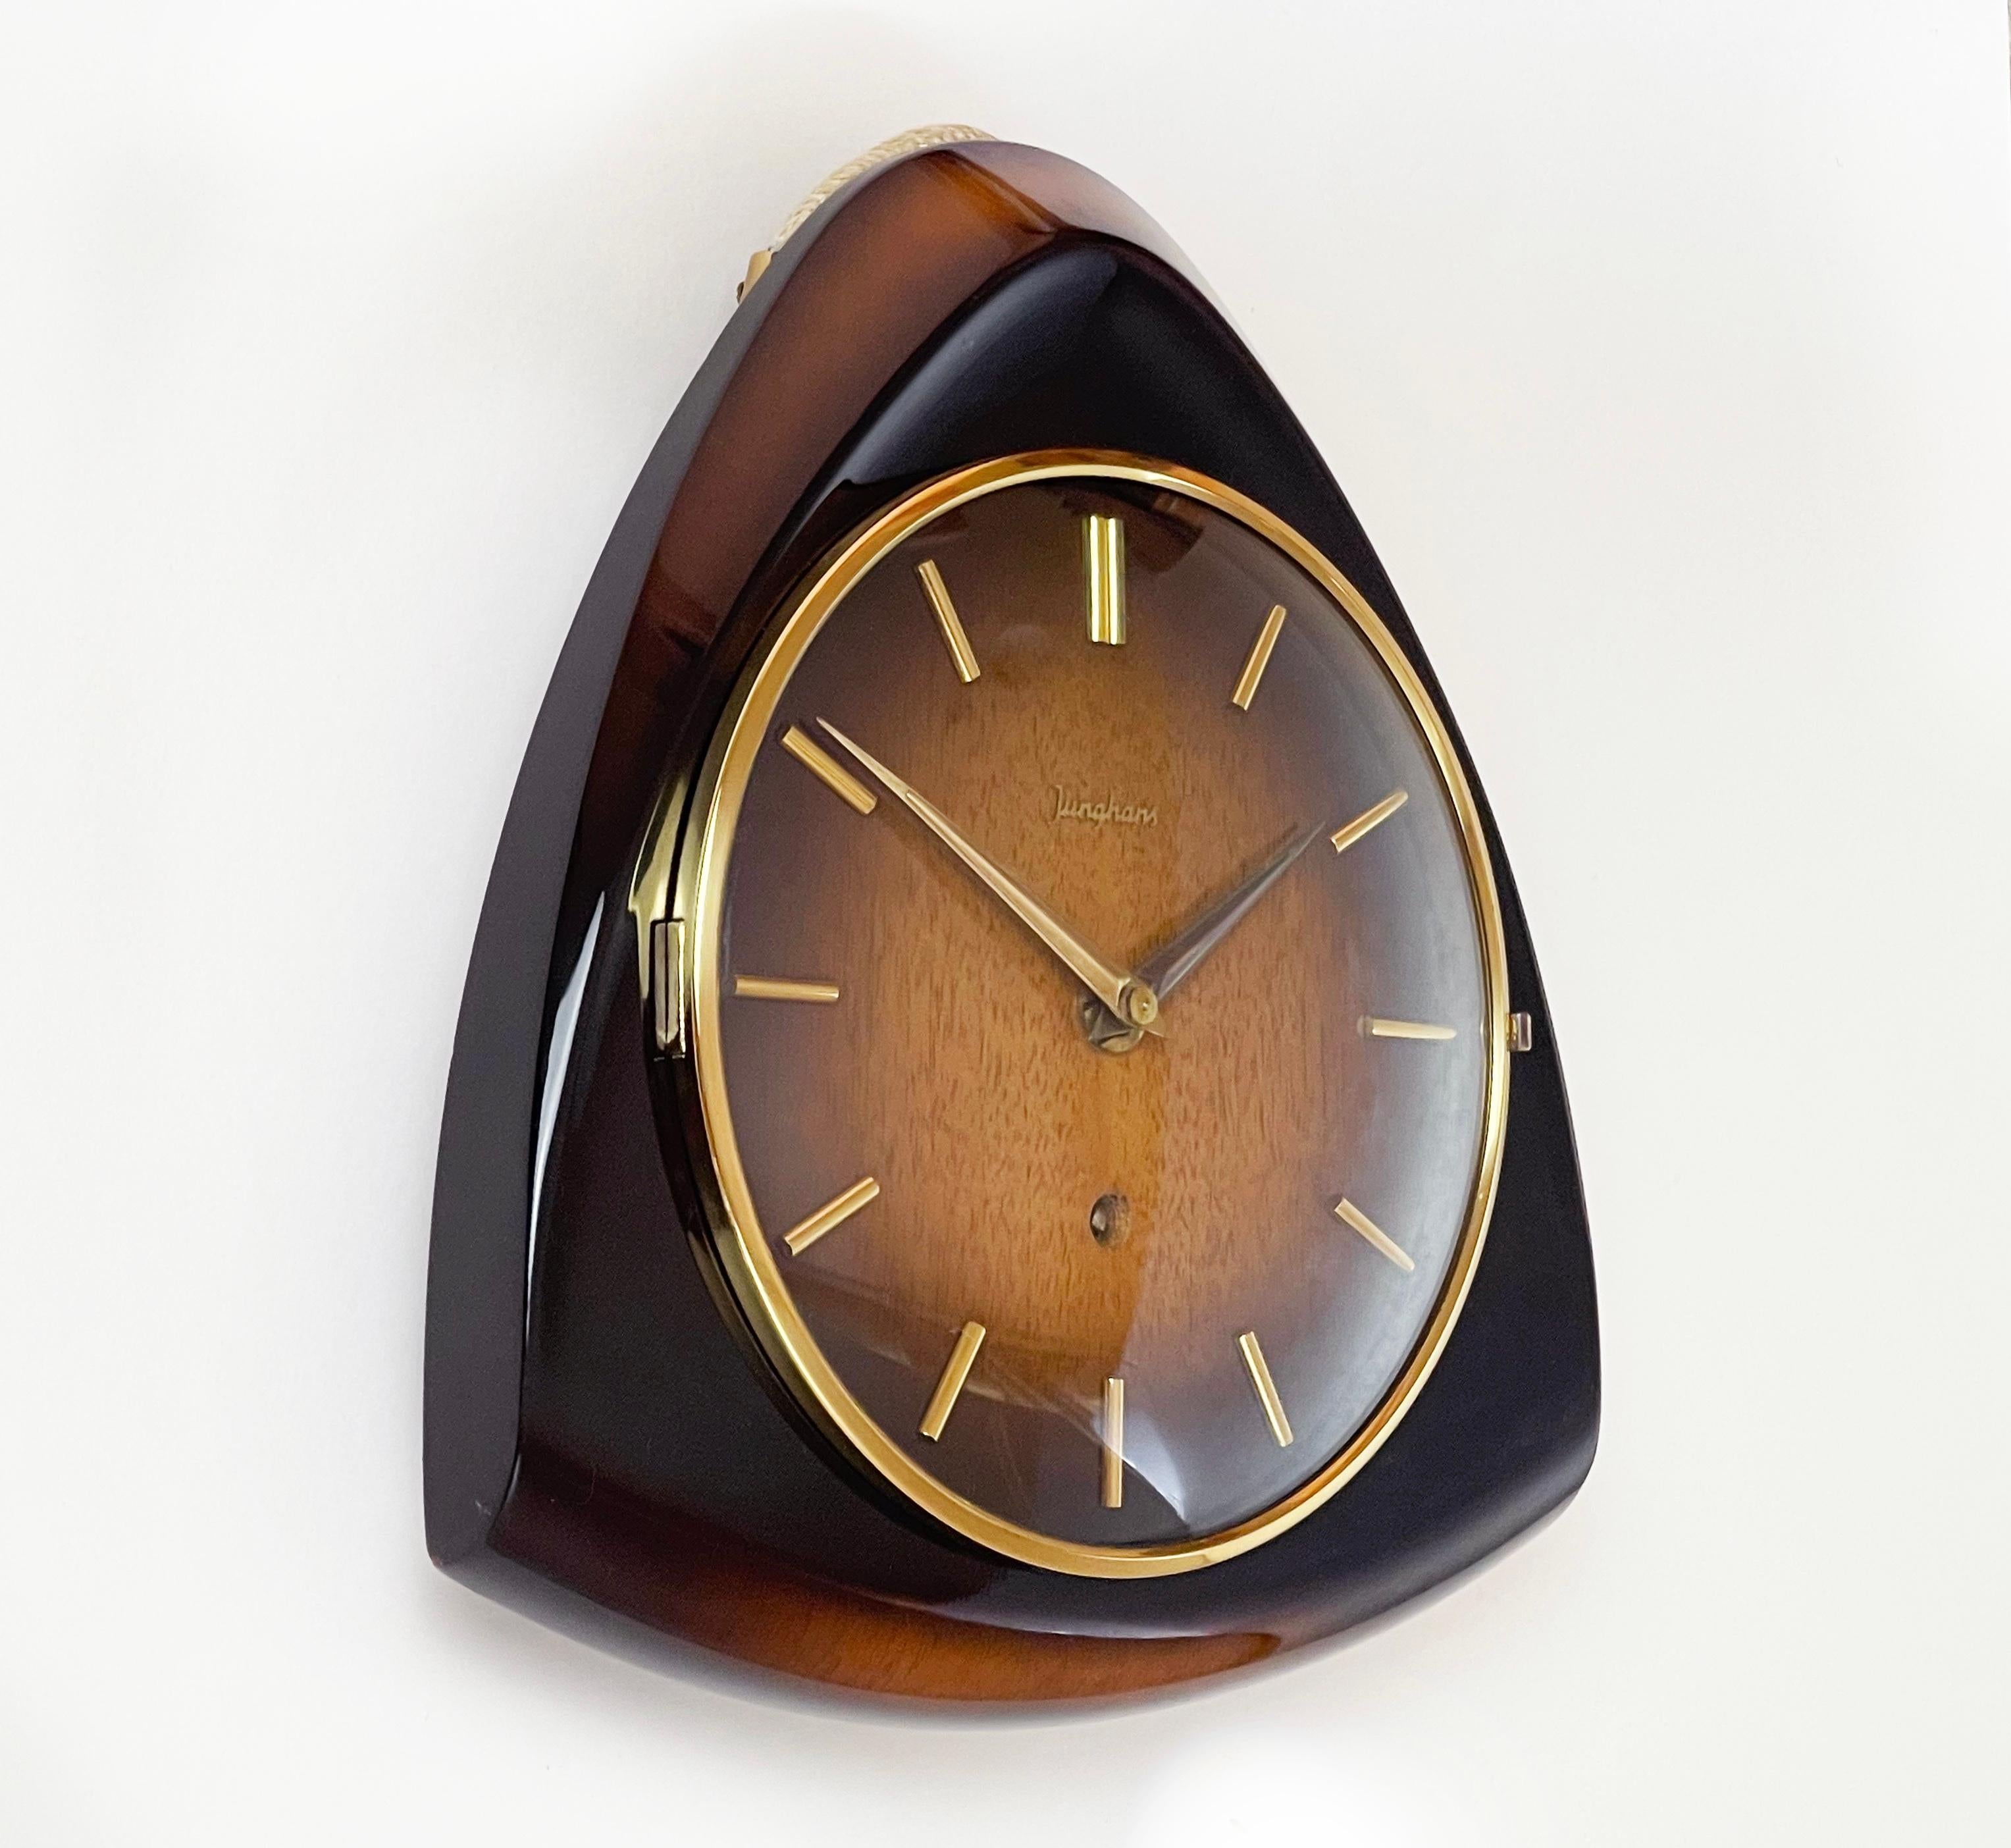 Hervorragende Verarbeitung und Design von der berühmten deutschen Uhrenmanufaktur JUNGHANS.
Ein ziemlich futuristischer Ansatz, ein Meisterwerk des Designs der Jahrhundertmitte.
Diese Wanduhr aus der Mitte der 50er bis 60er Jahre ist aus Buche